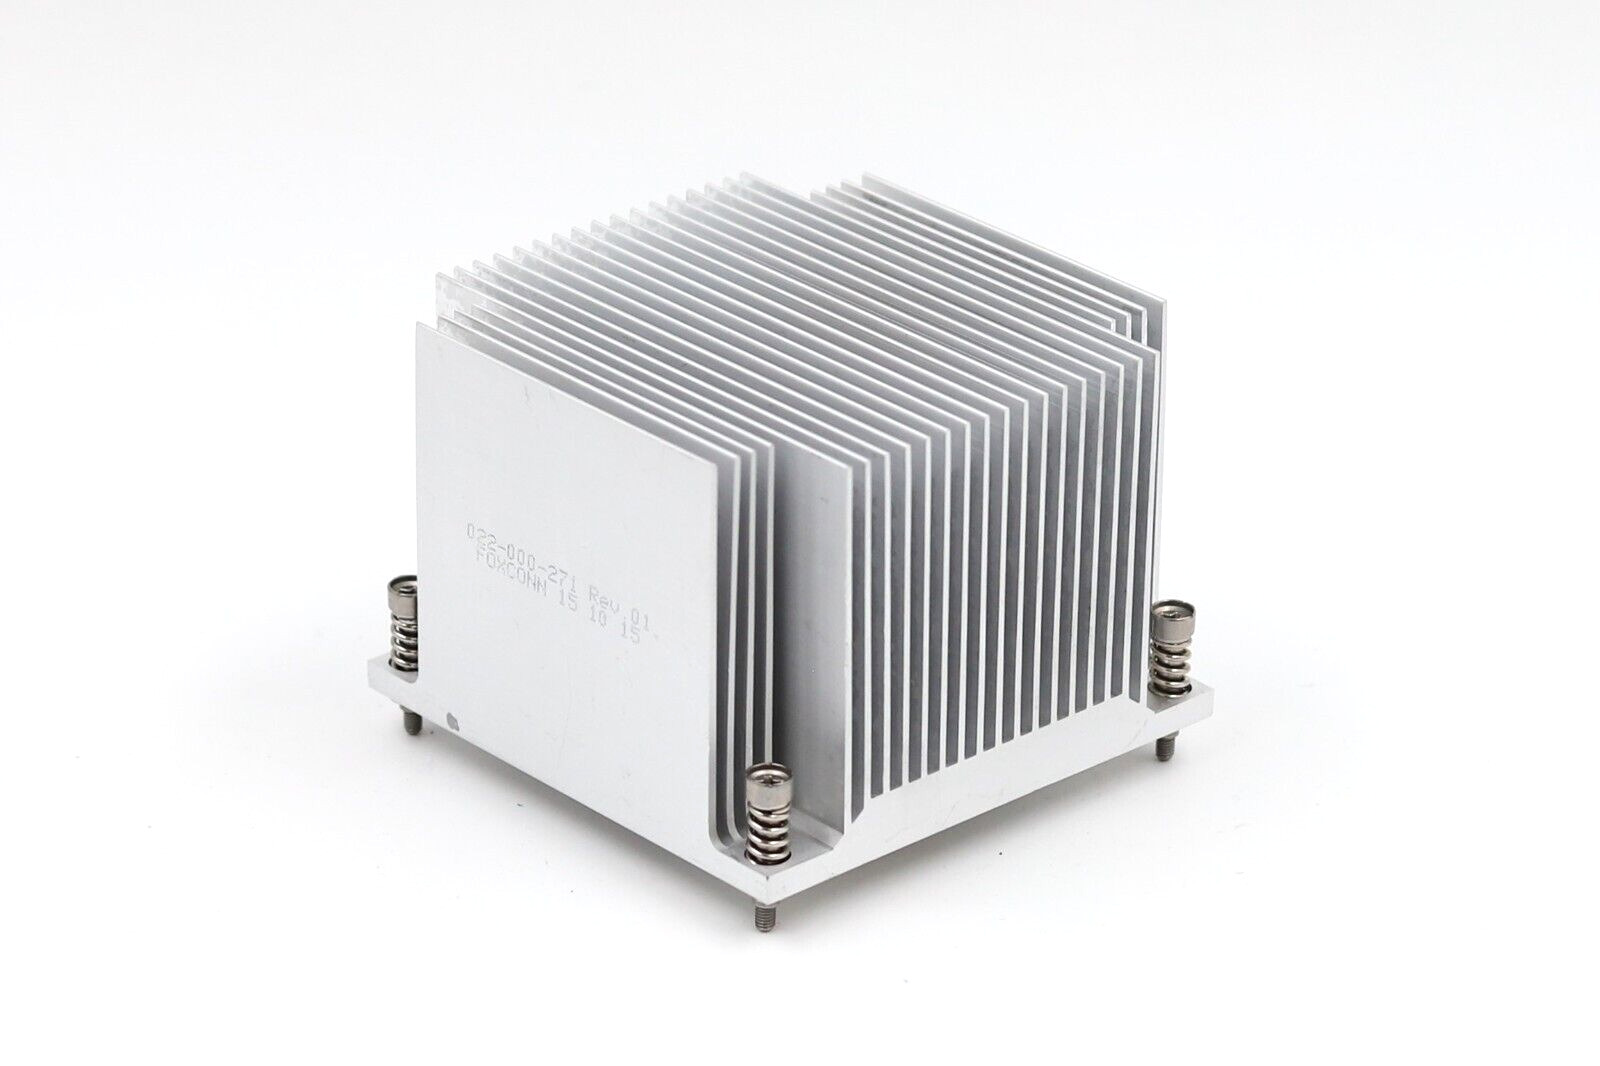 EMC ISILON NL410 X210 CPU Cooling Heatsink P/N: 022-000-271 Tested Working